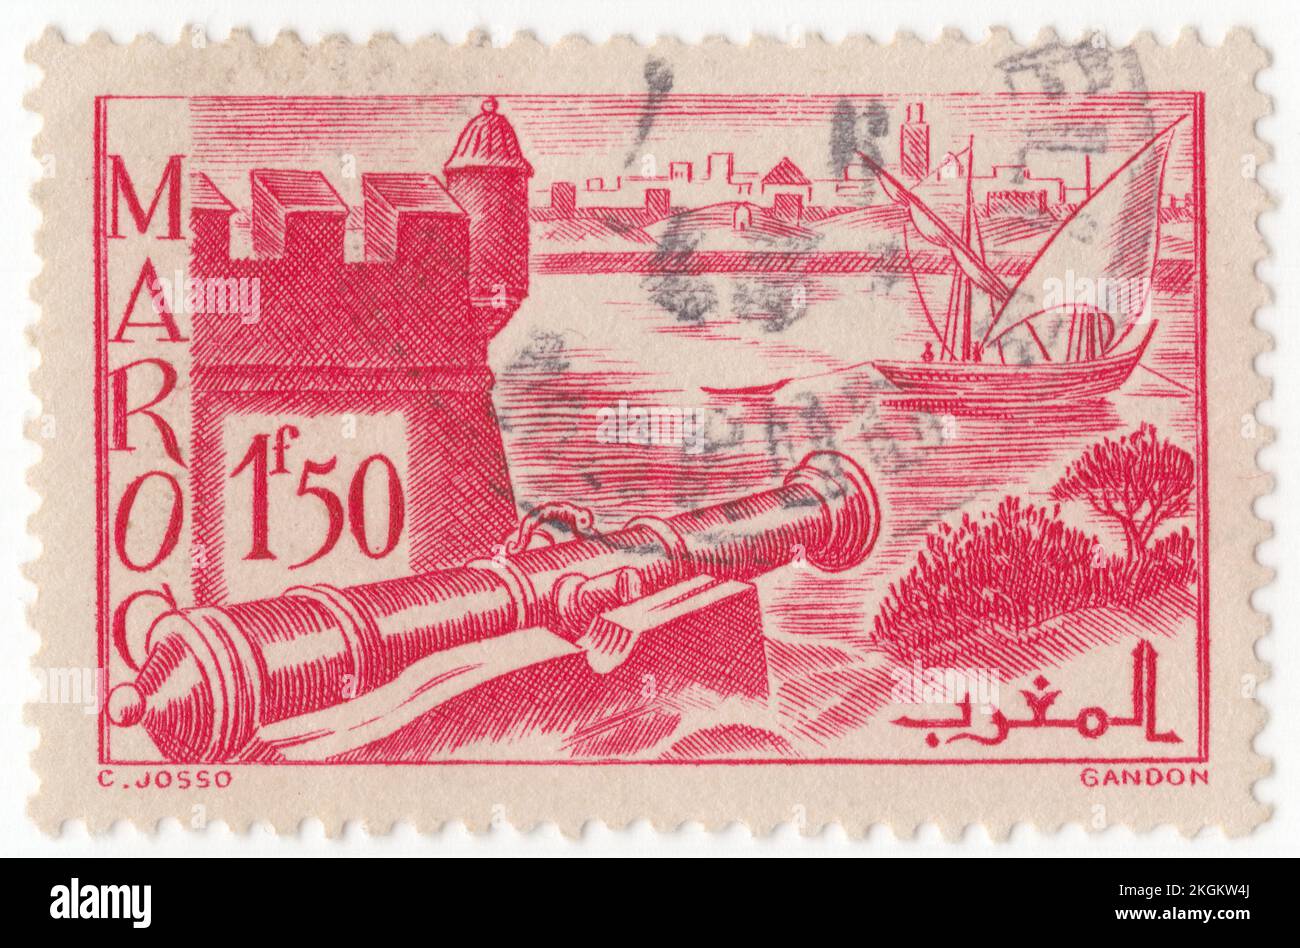 FRANZÖSISCH-MAROKKO - 1940: Eine Briefmarke von 1,50 Francs, die die Stadtmauern von Sale darstellt, die Stadt im Nordwesten Marokkos, am rechten Ufer des Flusses Bou Regreg, gegenüber der Landeshauptstadt Rabat, für die sie als Pendlerstadt dient. Gegründet etwa 1030 von der Banu Ifran, wurde sie später im 17.. Jahrhundert als unabhängige republik zu einem Hafen für Piraten, bevor sie in Alaouite Marokko aufgenommen wurde. Der Name der Stadt wird manchmal transliteriert als Salli oder Sallee. Die Nationalstraße 6 verbindet sie nach Fez und Meknes im Osten und die N1 nach Kénitra im Nordosten Stockfoto